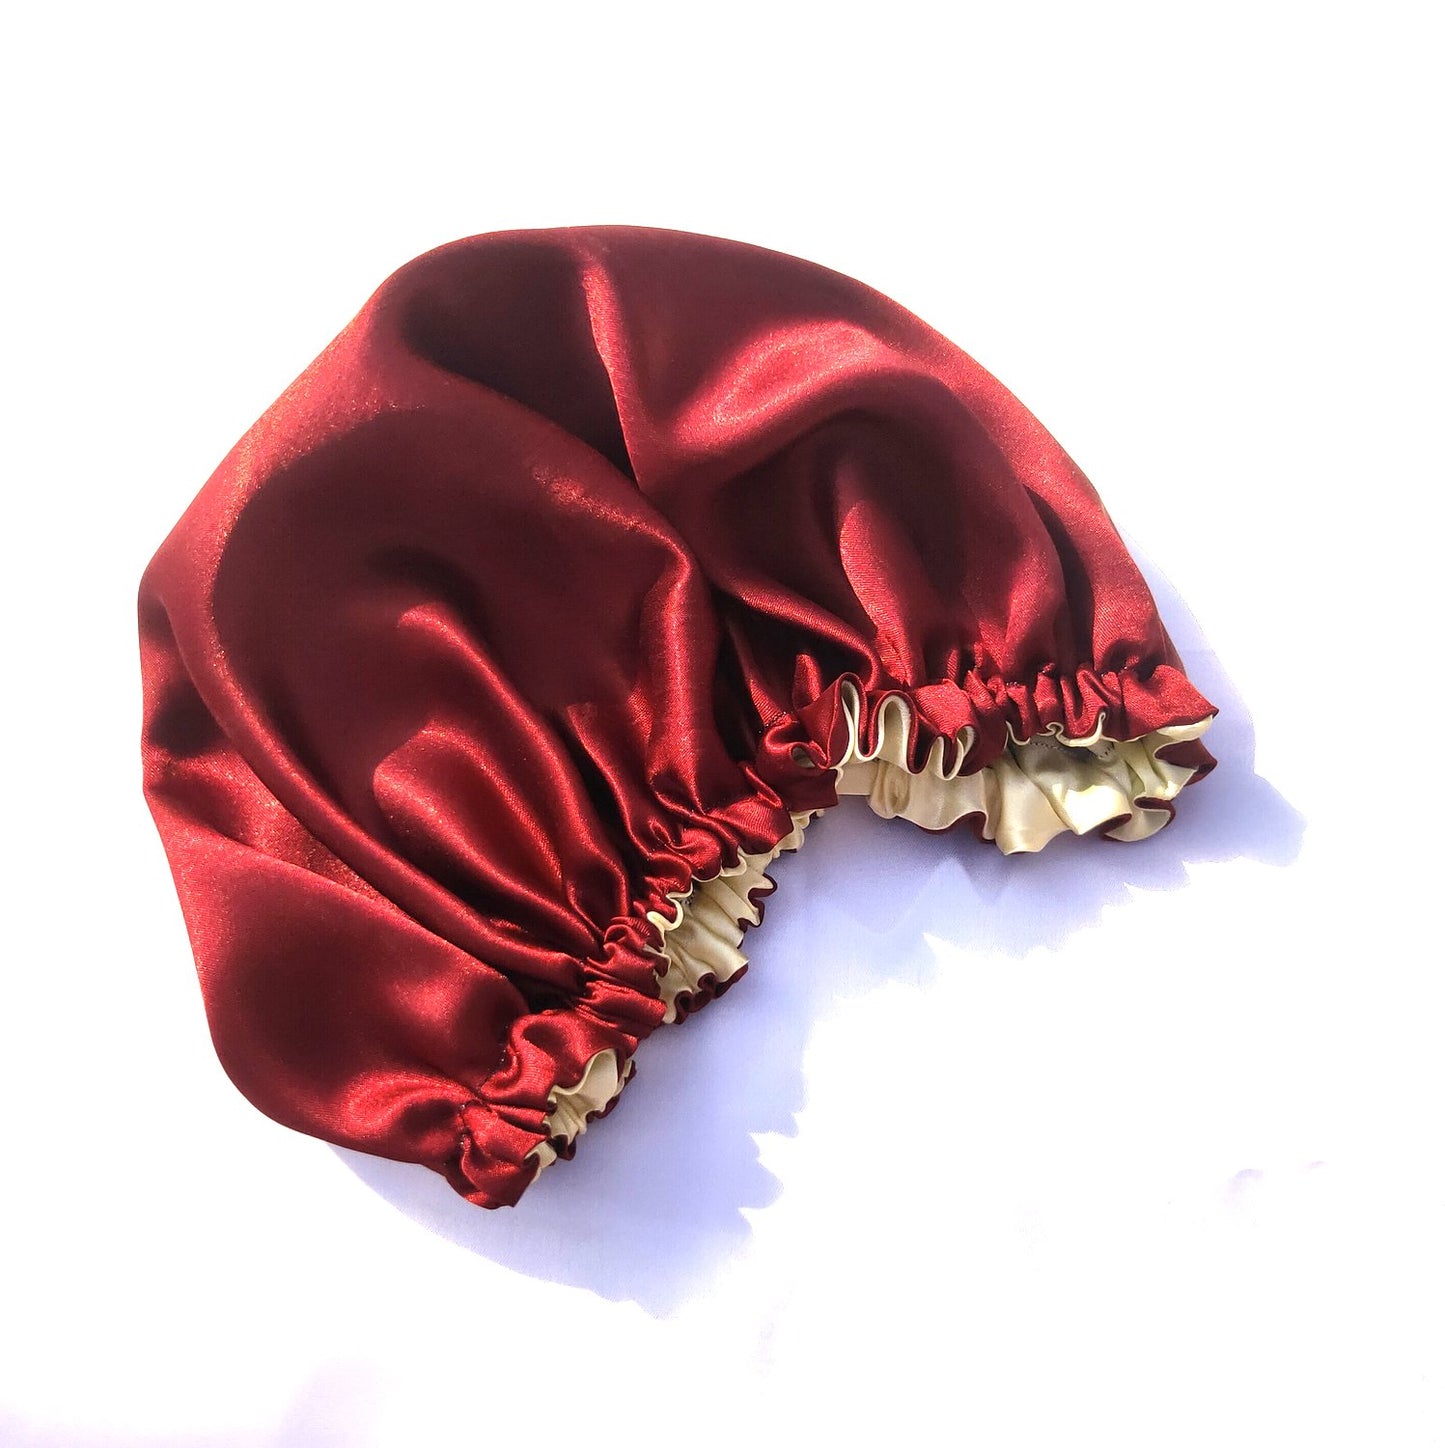 Anokhi Ada Handmade Dual Sided Satin Hair Bonnet Sleep Cap (36-12)